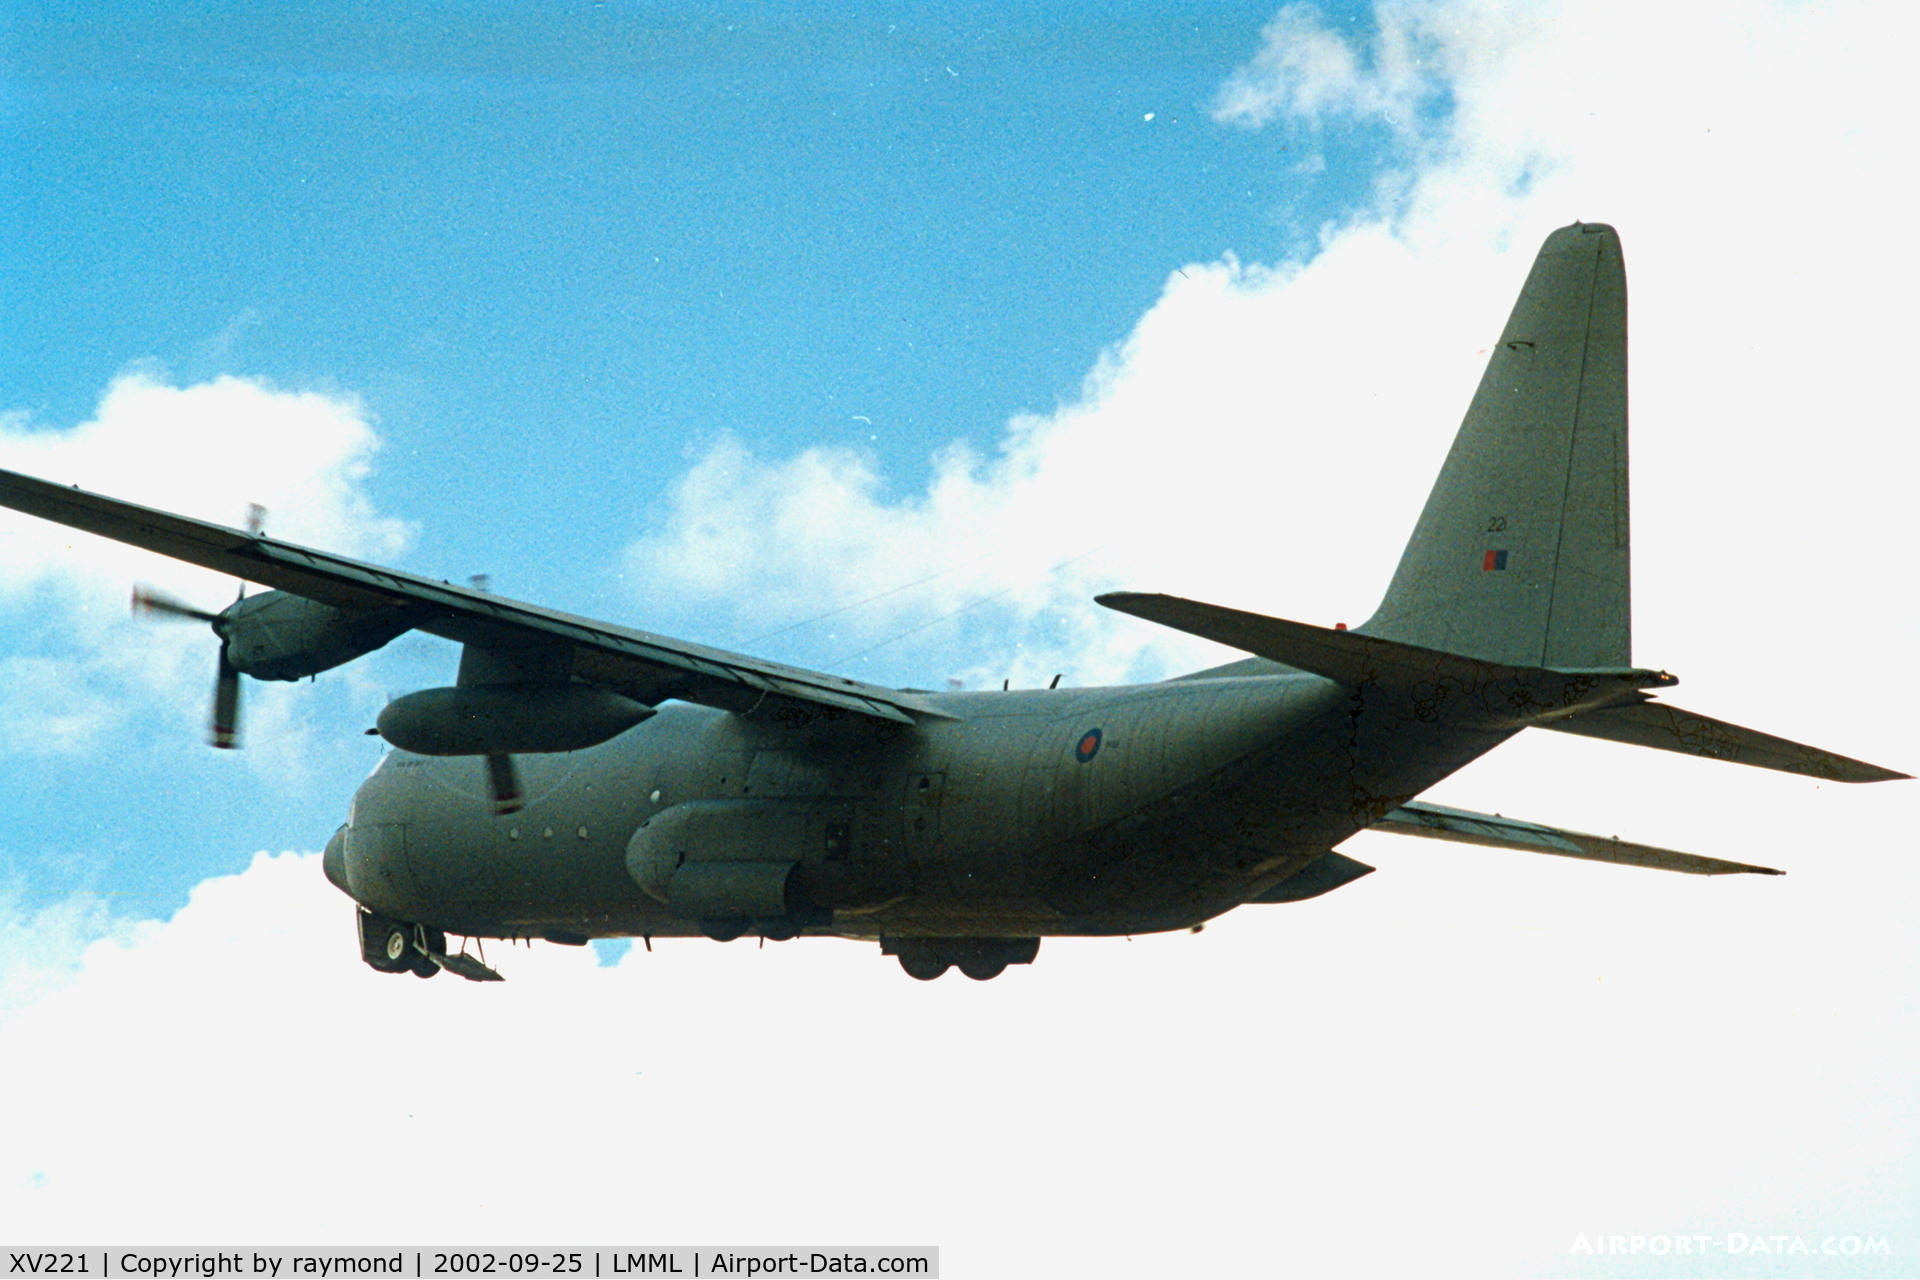 XV221, 1967 Lockheed C-130K Hercules C.3 C/N 382-4251, C130 XV221 RAF in the overall grey finish.